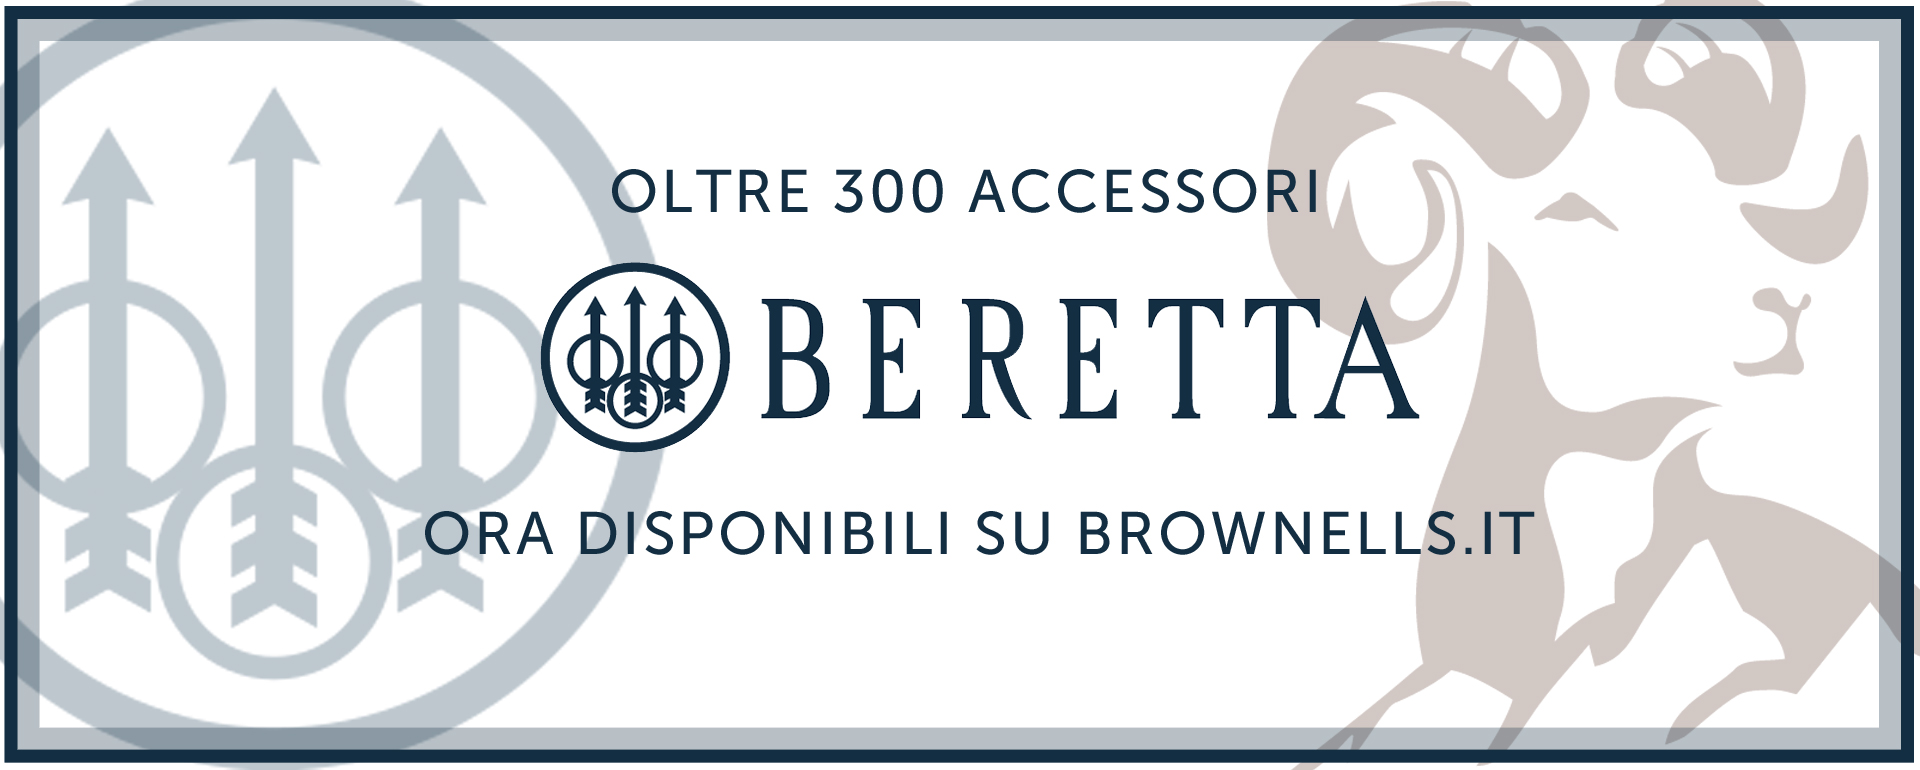 Oltre 300 accessori Beretta ora disponibili su Brownells.it